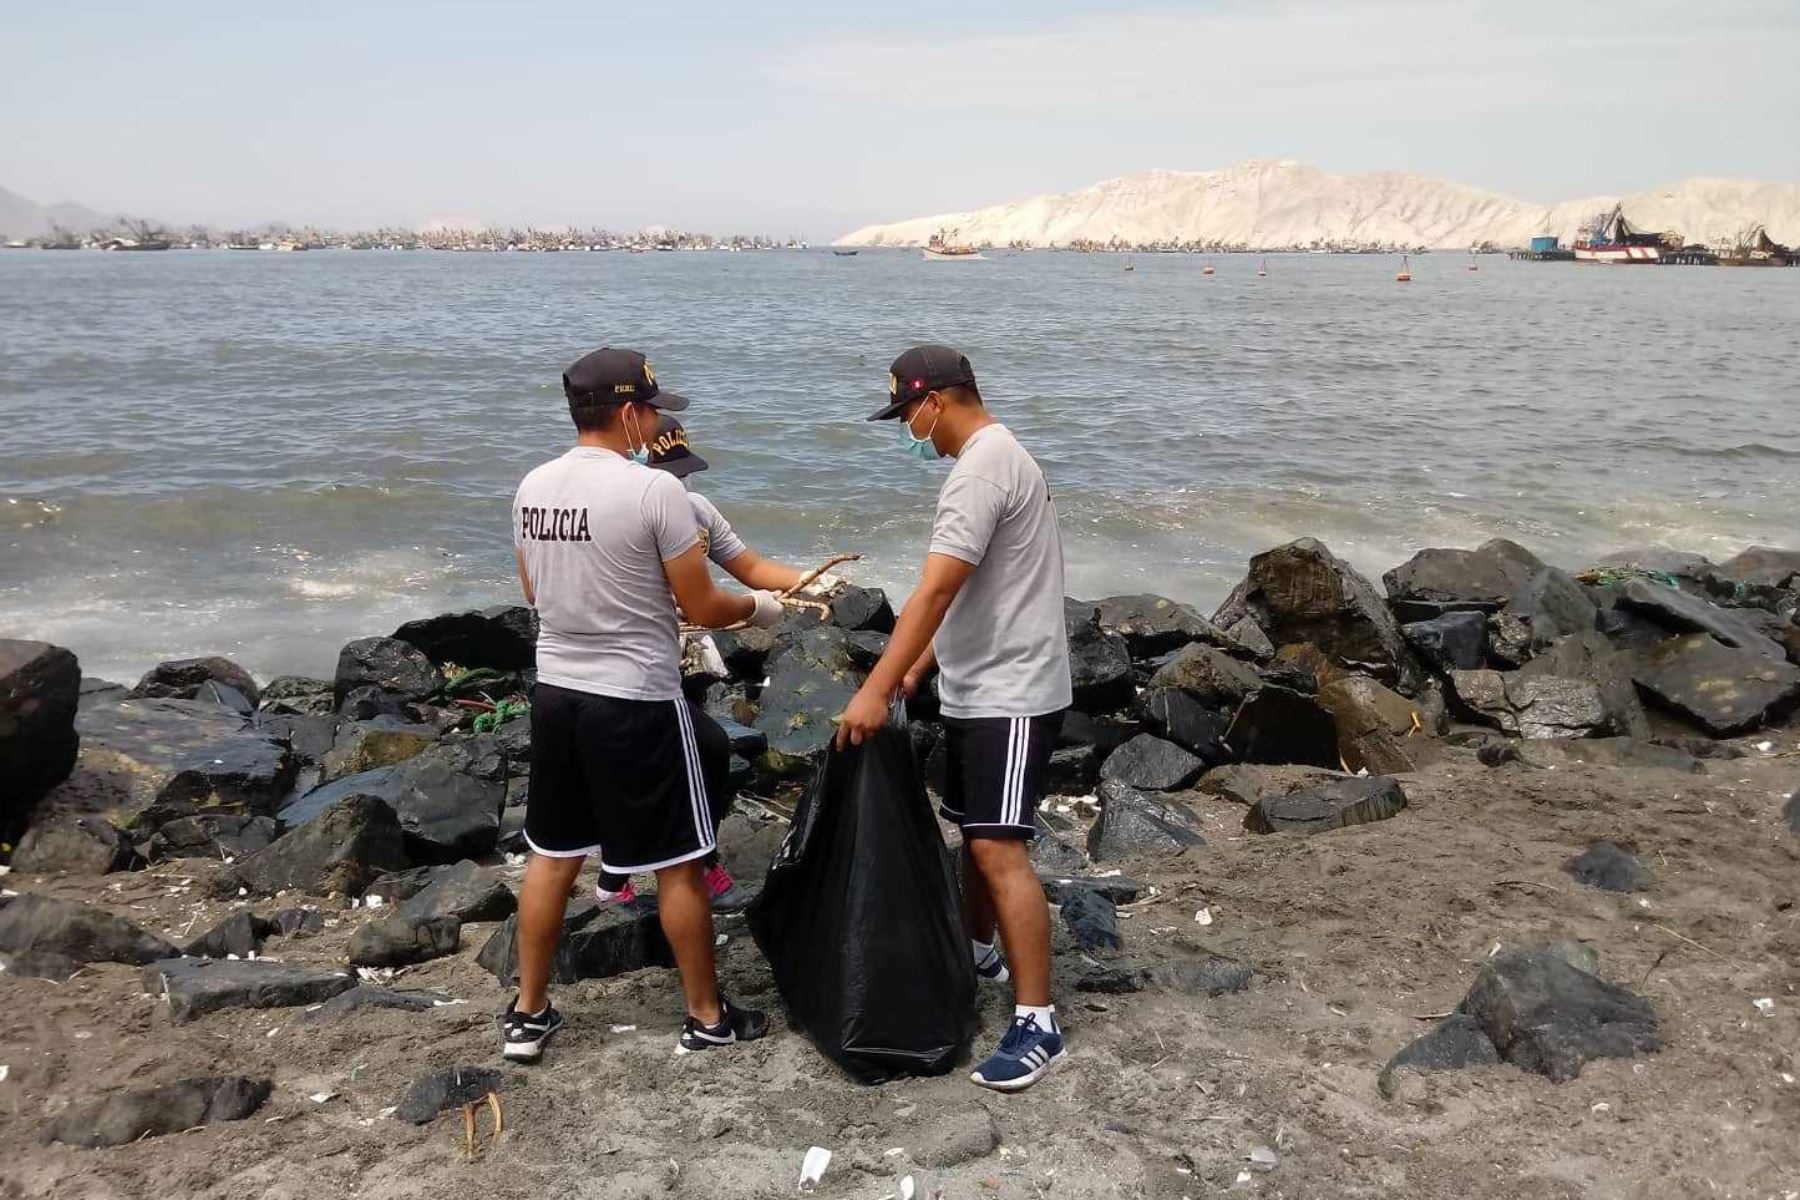 Agentes de la División Policial (Divipol) de Chimbote, en la región Áncash, se sumaron al reto mundial “Trashtag Challenge”, que busca mantener limpios los lugares públicos a través de campañas de limpieza y segregación adecuada de residuos.